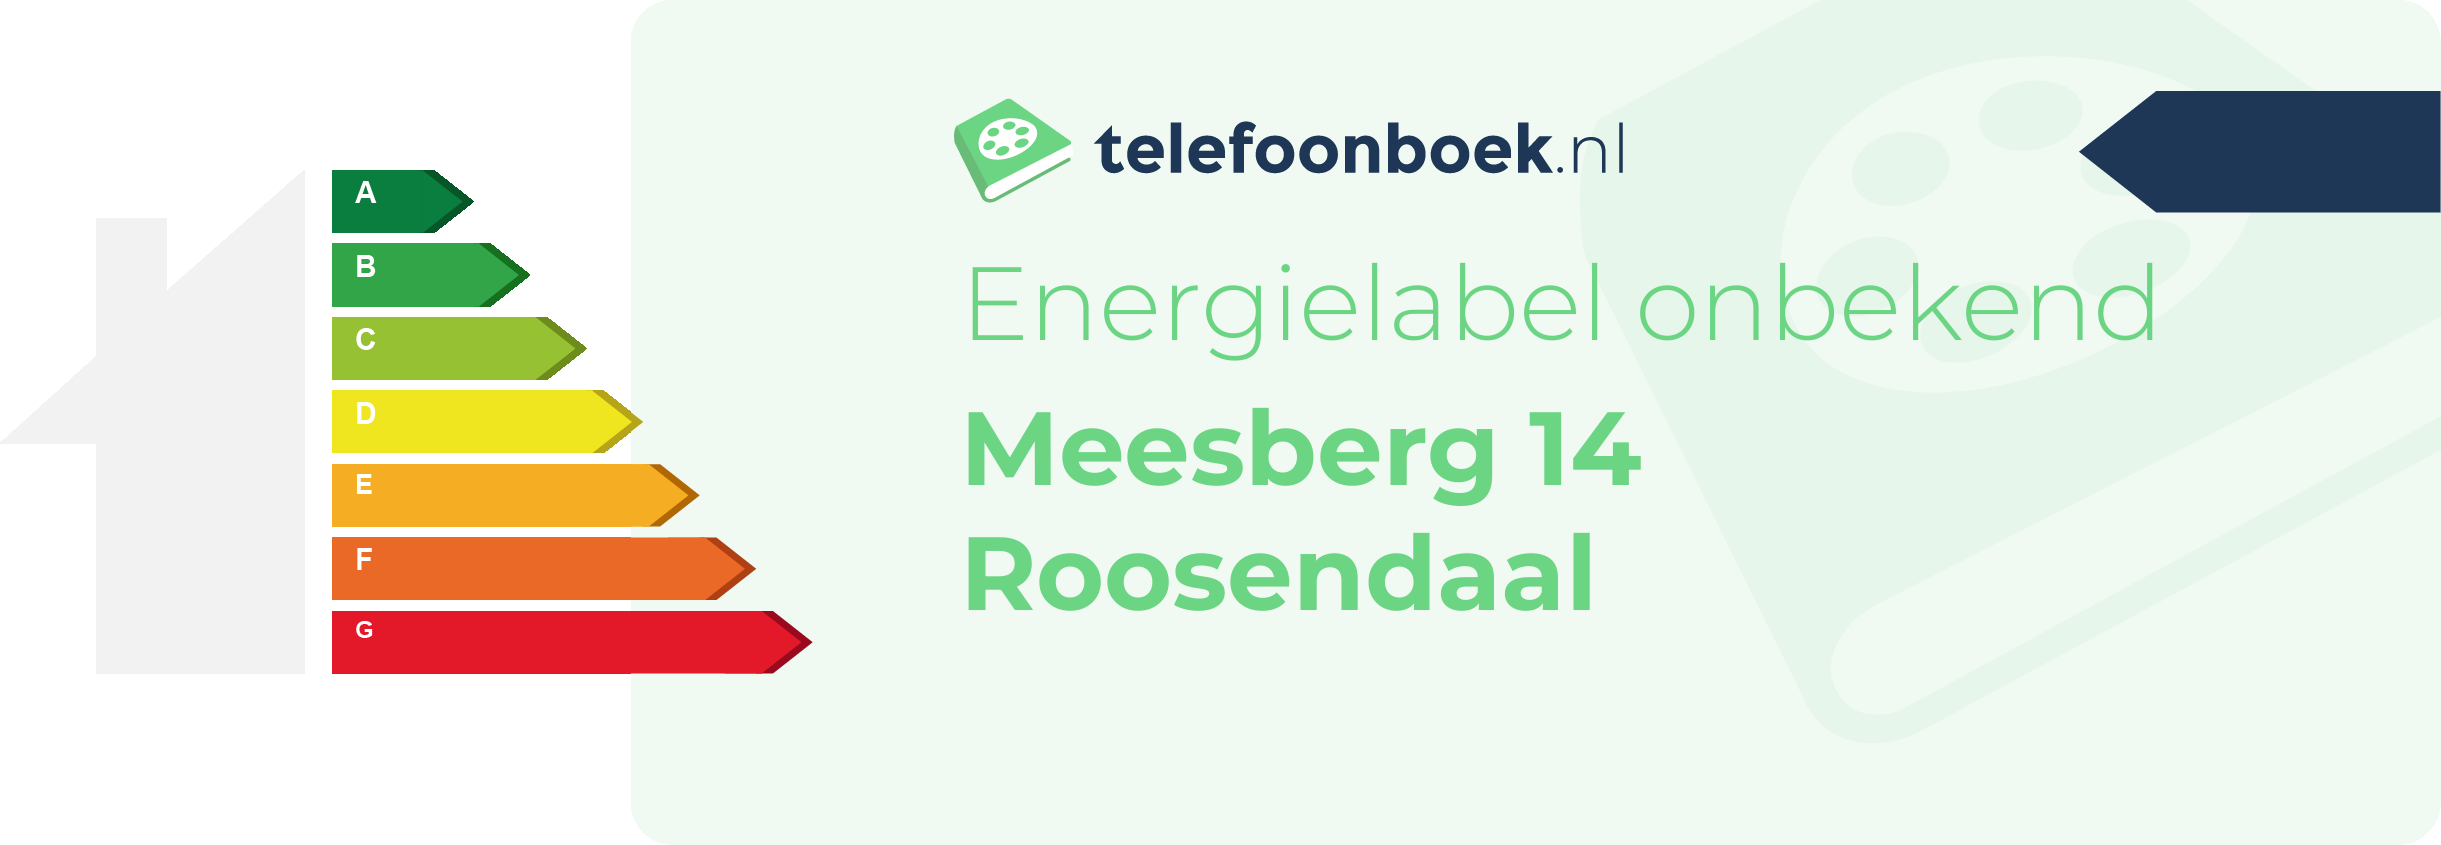 Energielabel Meesberg 14 Roosendaal